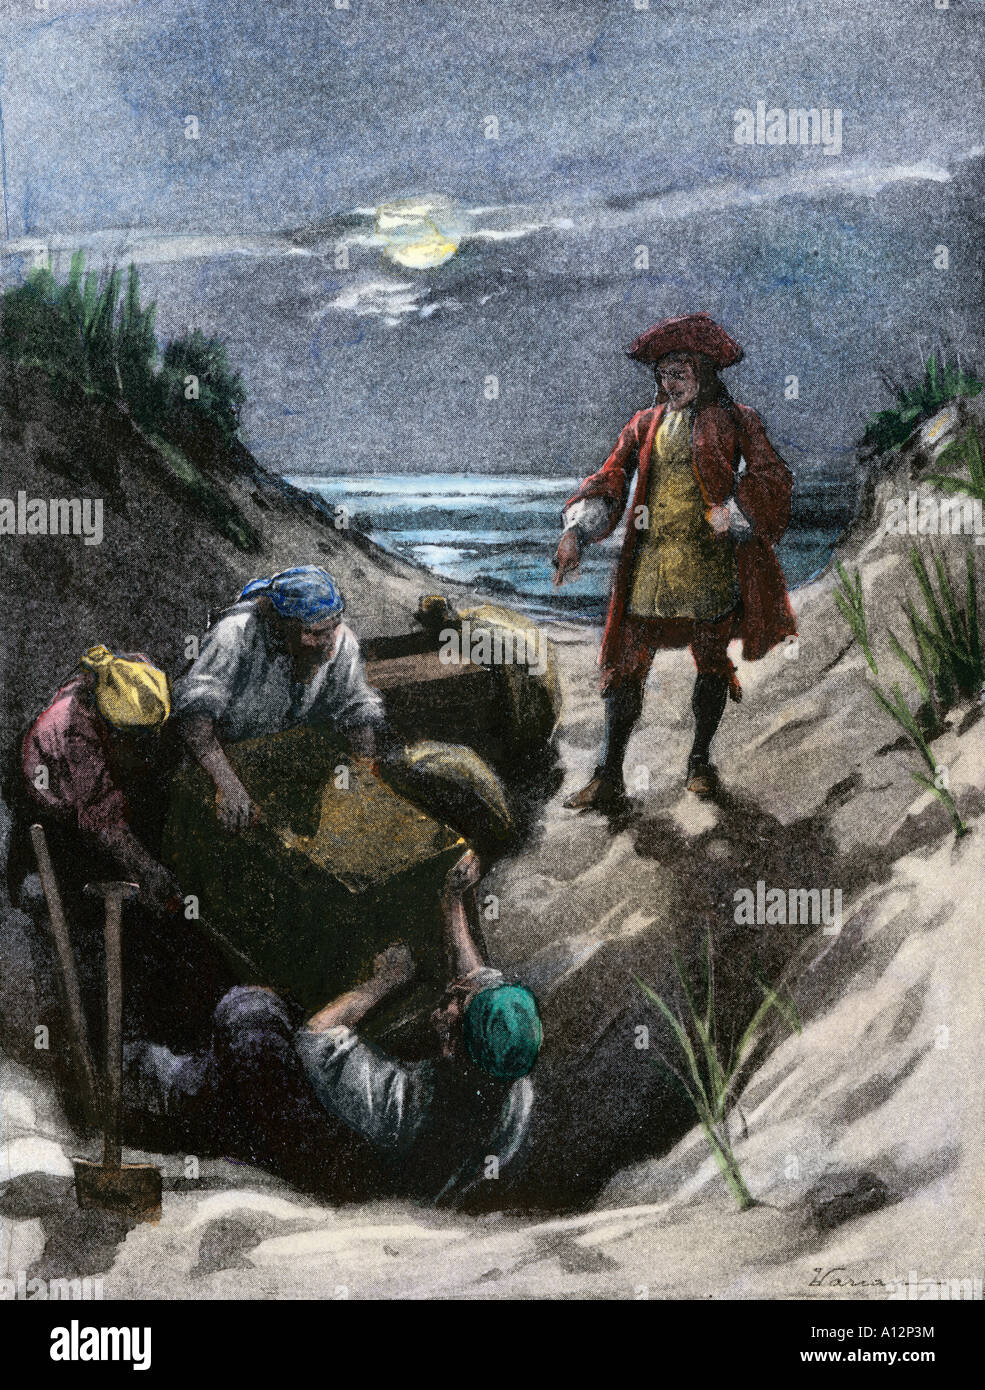 Pirata Capitán Kidd enterrar su tesoro posiblemente en Gardiners Island en el puerto de Nueva York. Mano de color halftone de ilustración. Foto de stock